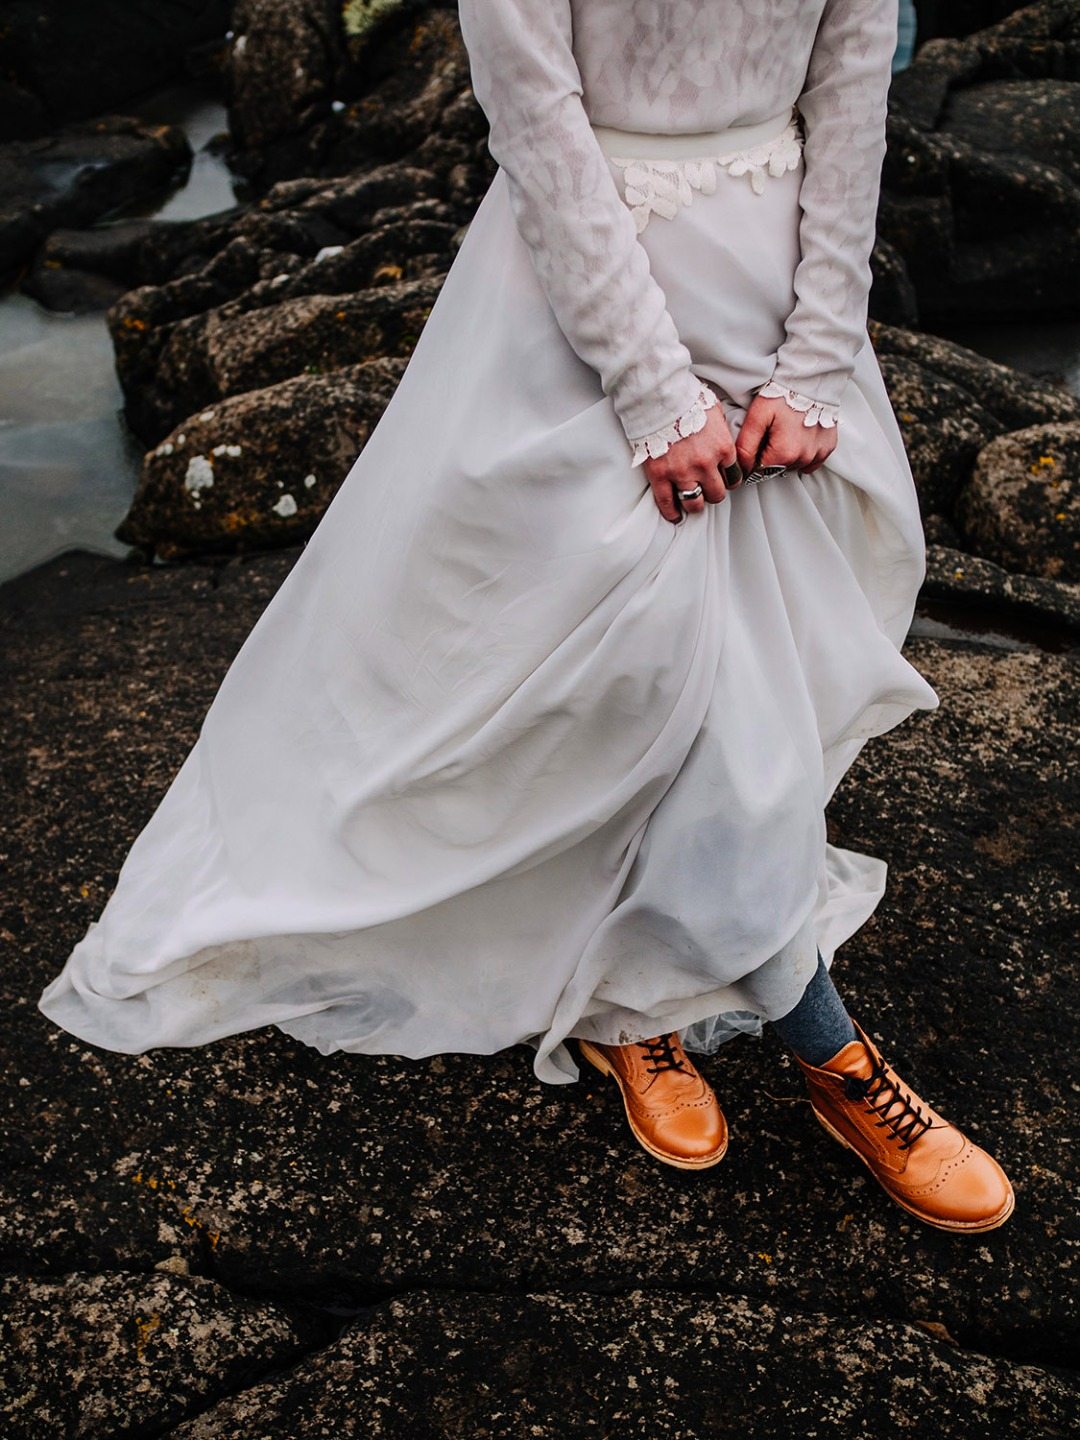 Welcome to the Faroe Islands: свадьба Анастасии и Александра